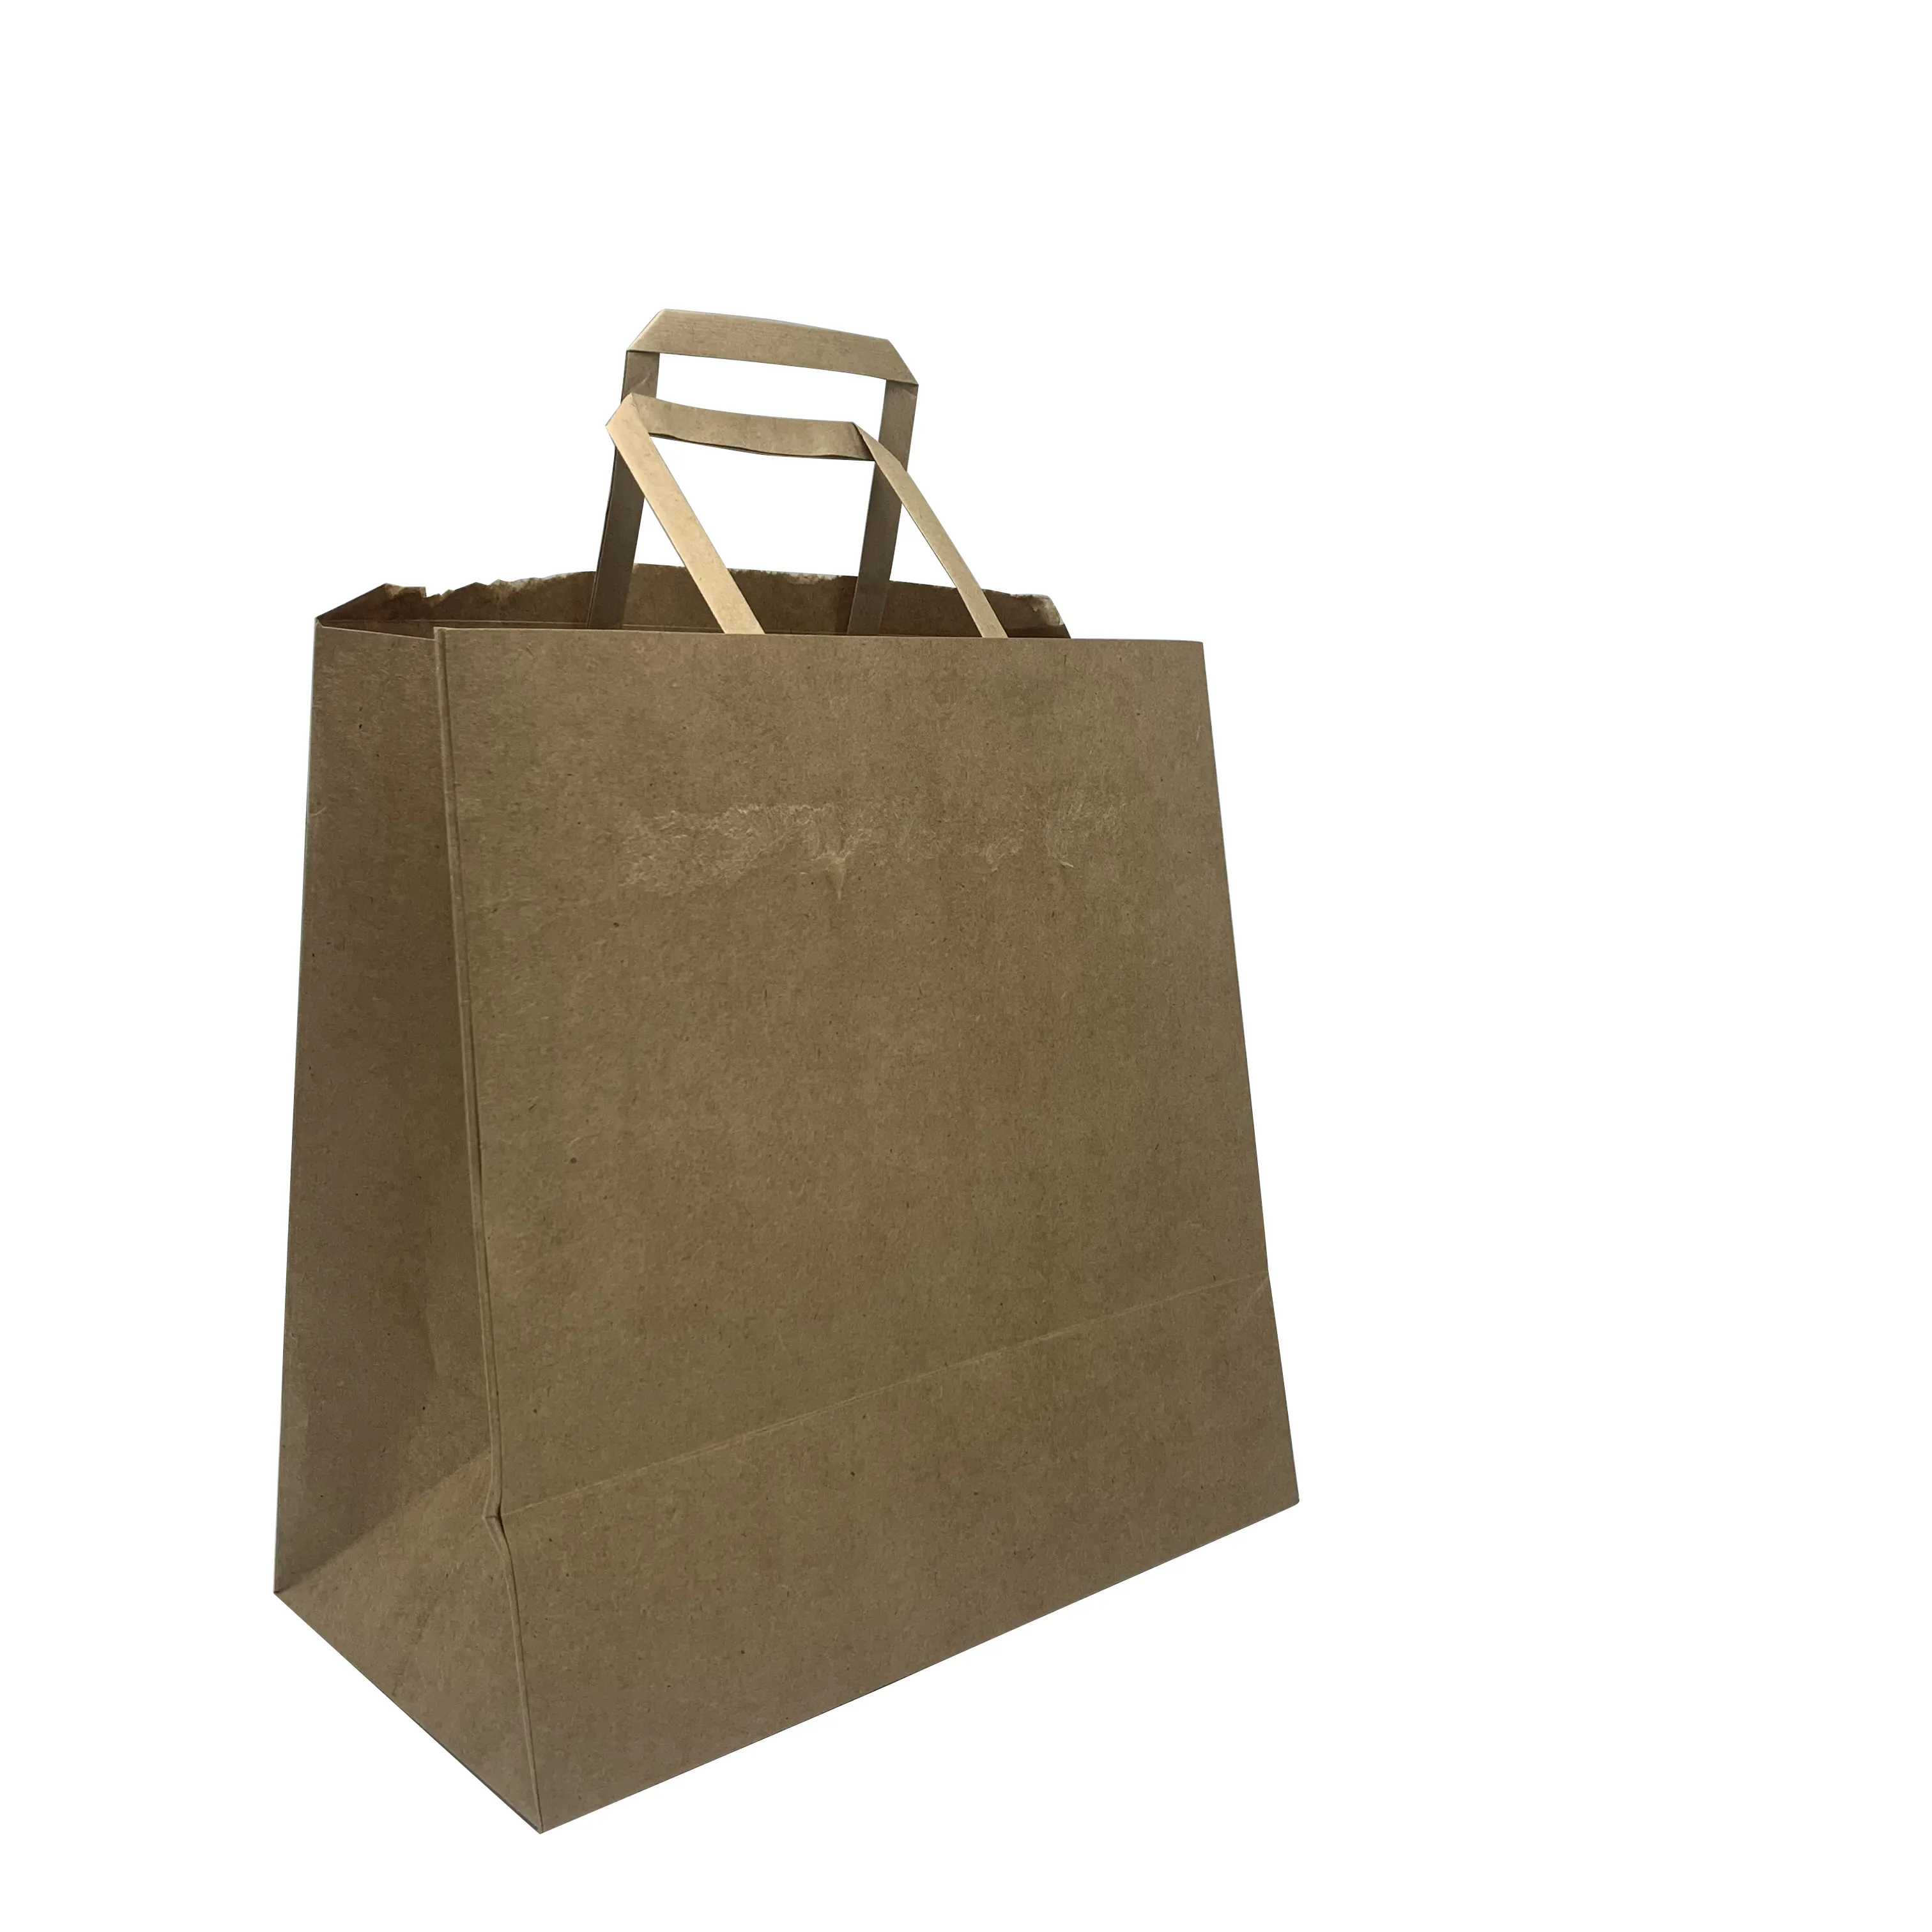 Bolsa de papel Kraft para restaurante, Logo personalizado, ancho, resistente, para llevar comida caliente, color marrón y blanco